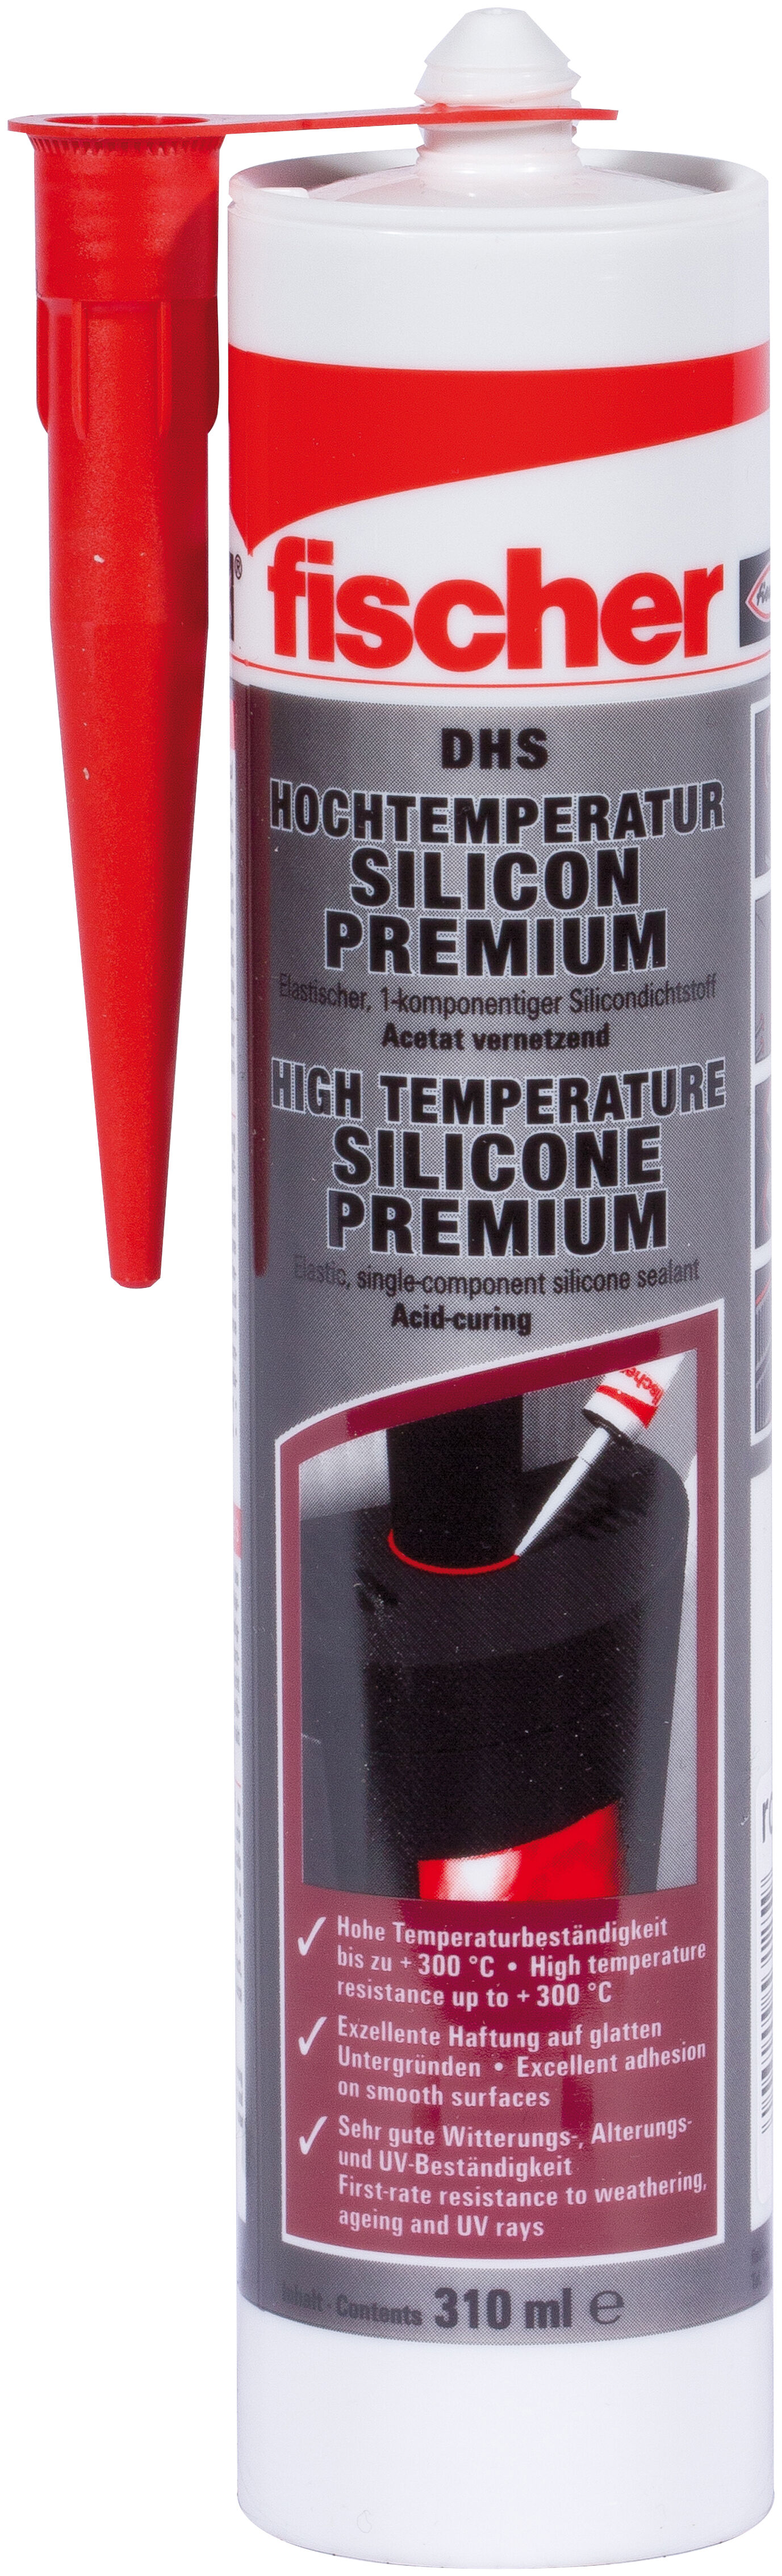 Высокотемпературный силикон премиум-класса DHS